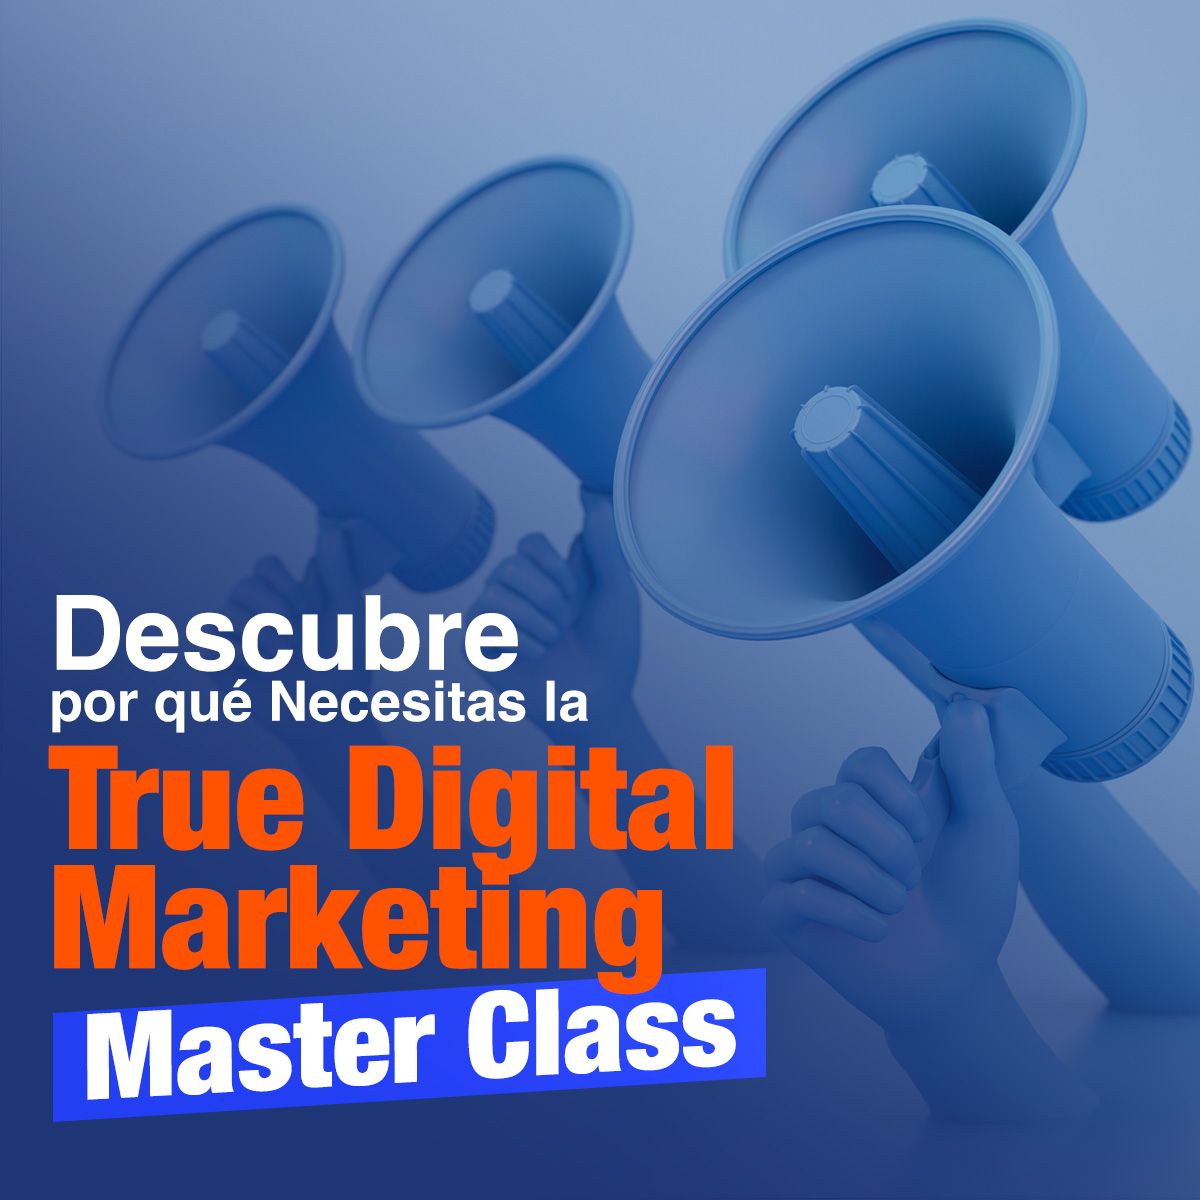 Descubre por qué Necesitas la True Digital Marketing Master Class